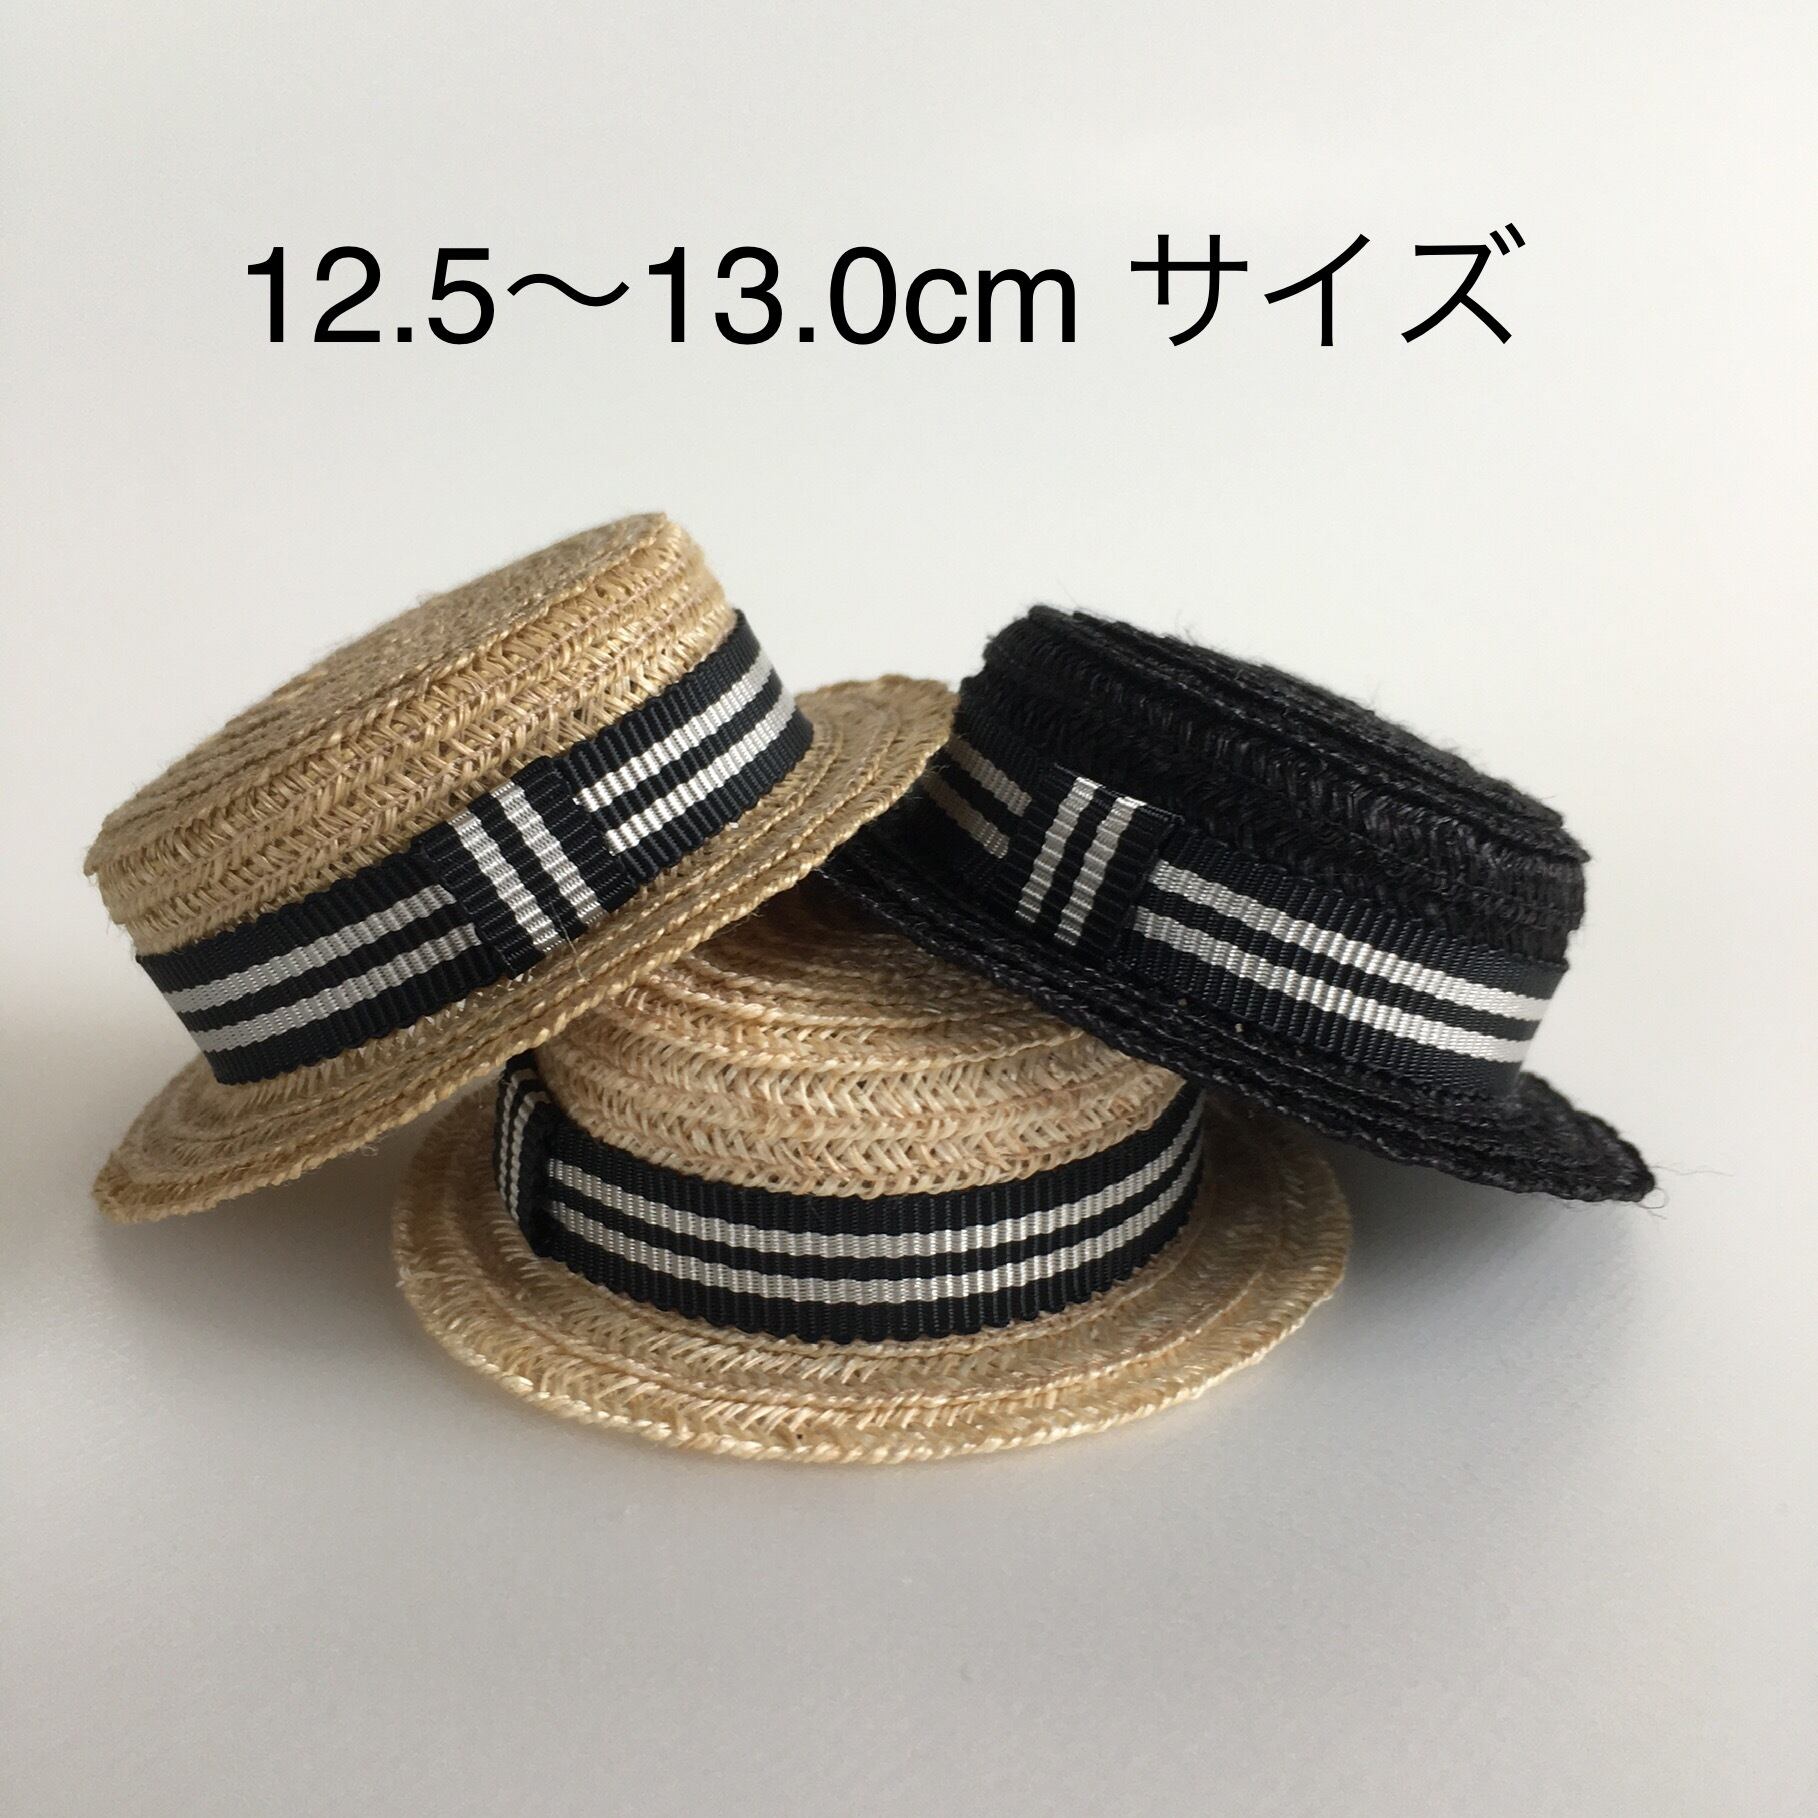 カンカン帽 12.5〜13.0cmサイズ | MODE ETLAN